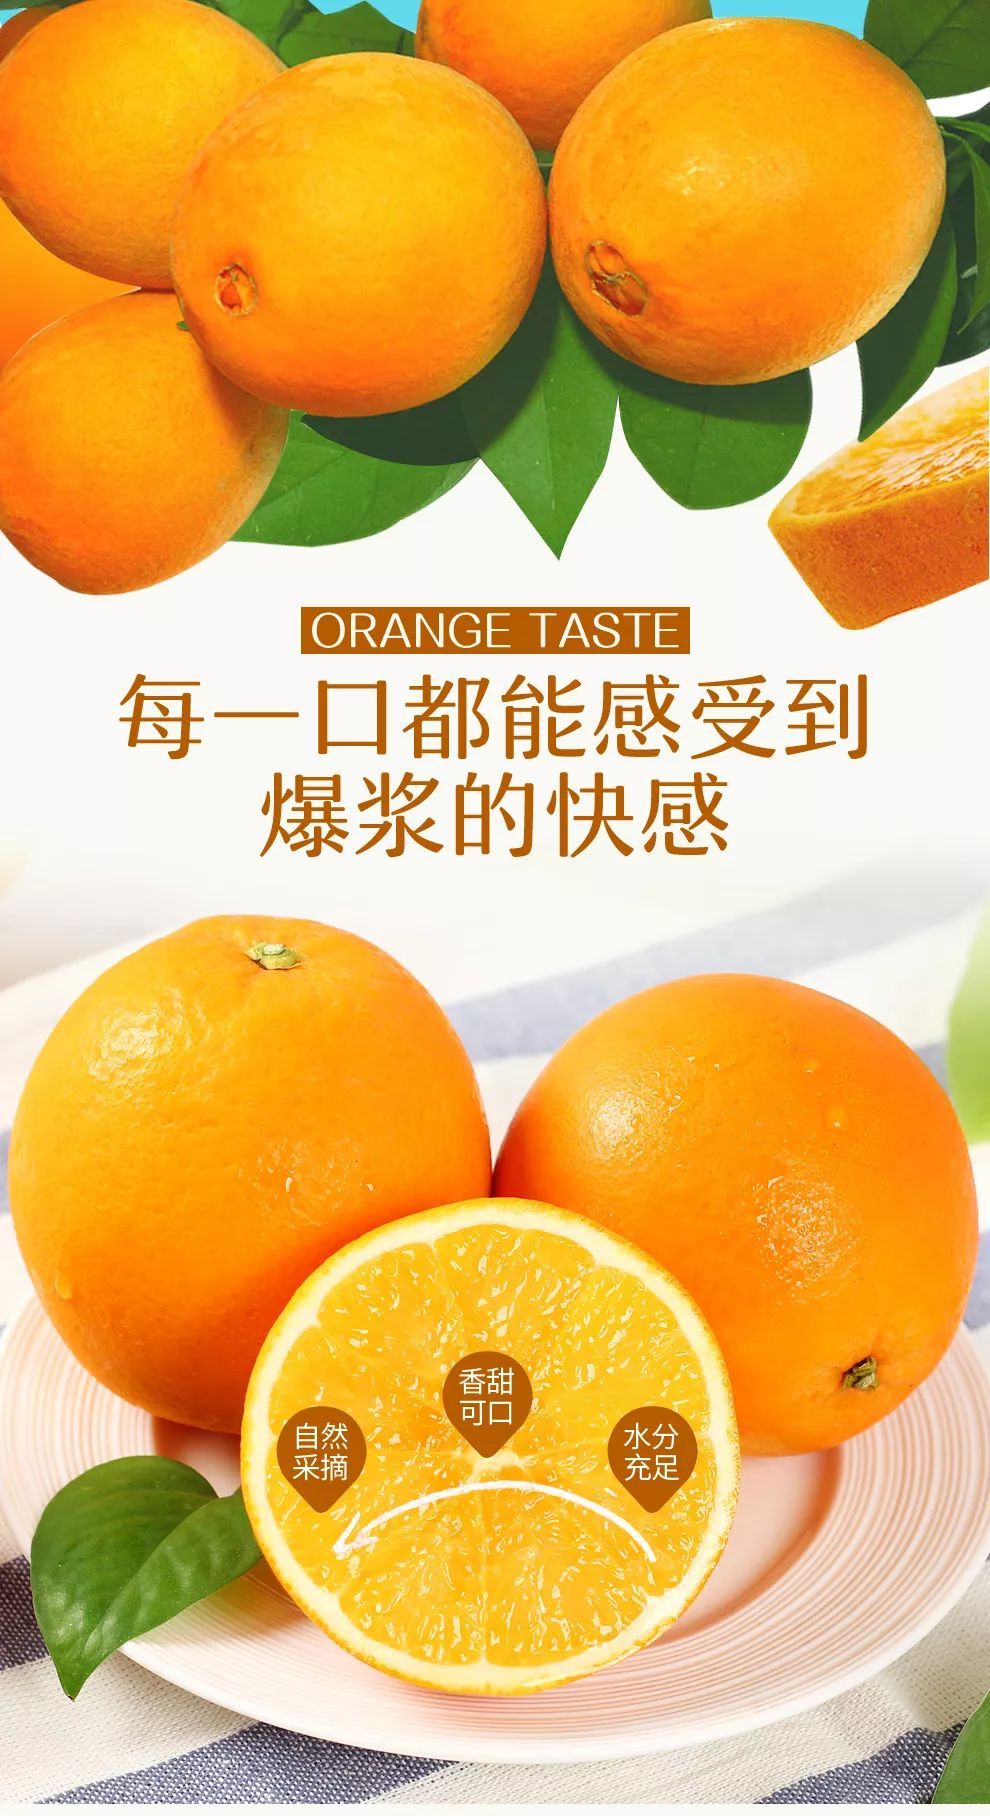 湖南永兴冰糖橙广告图片